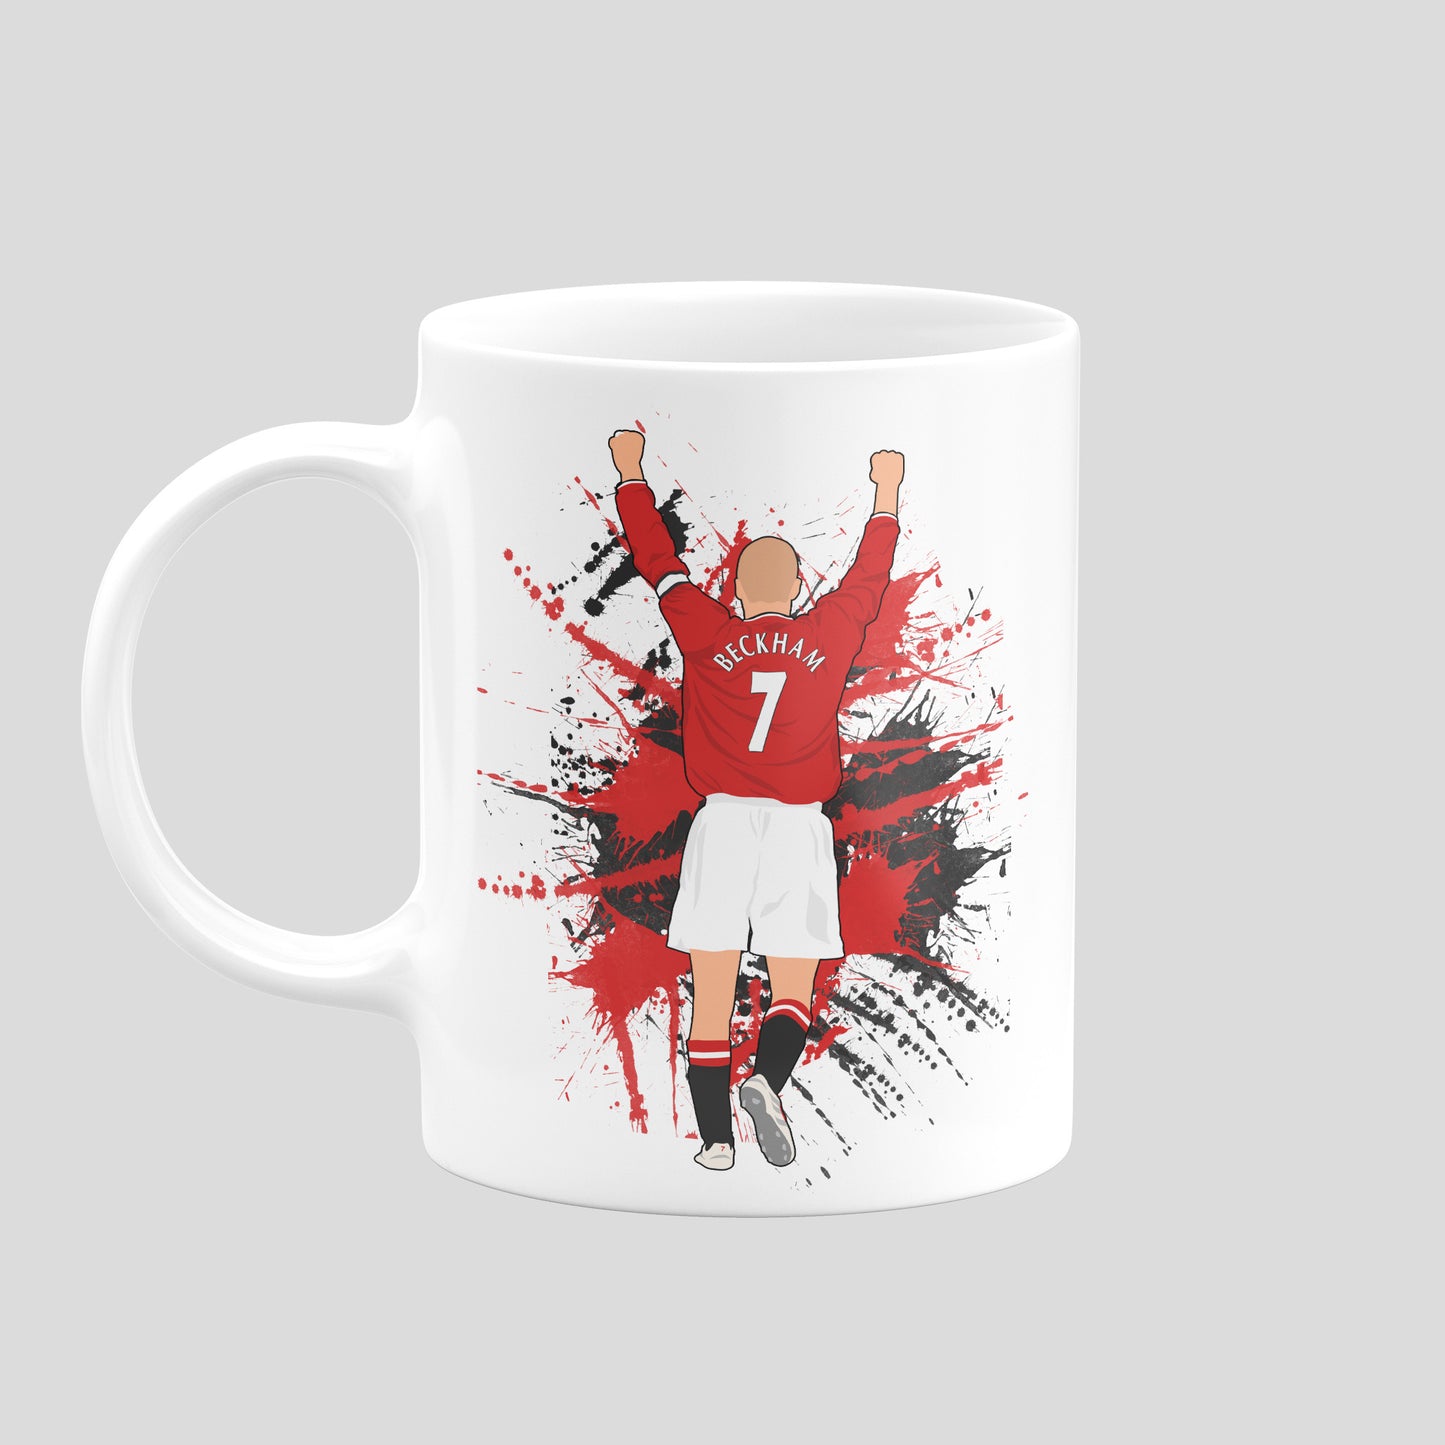 David Beckham Utd Mug